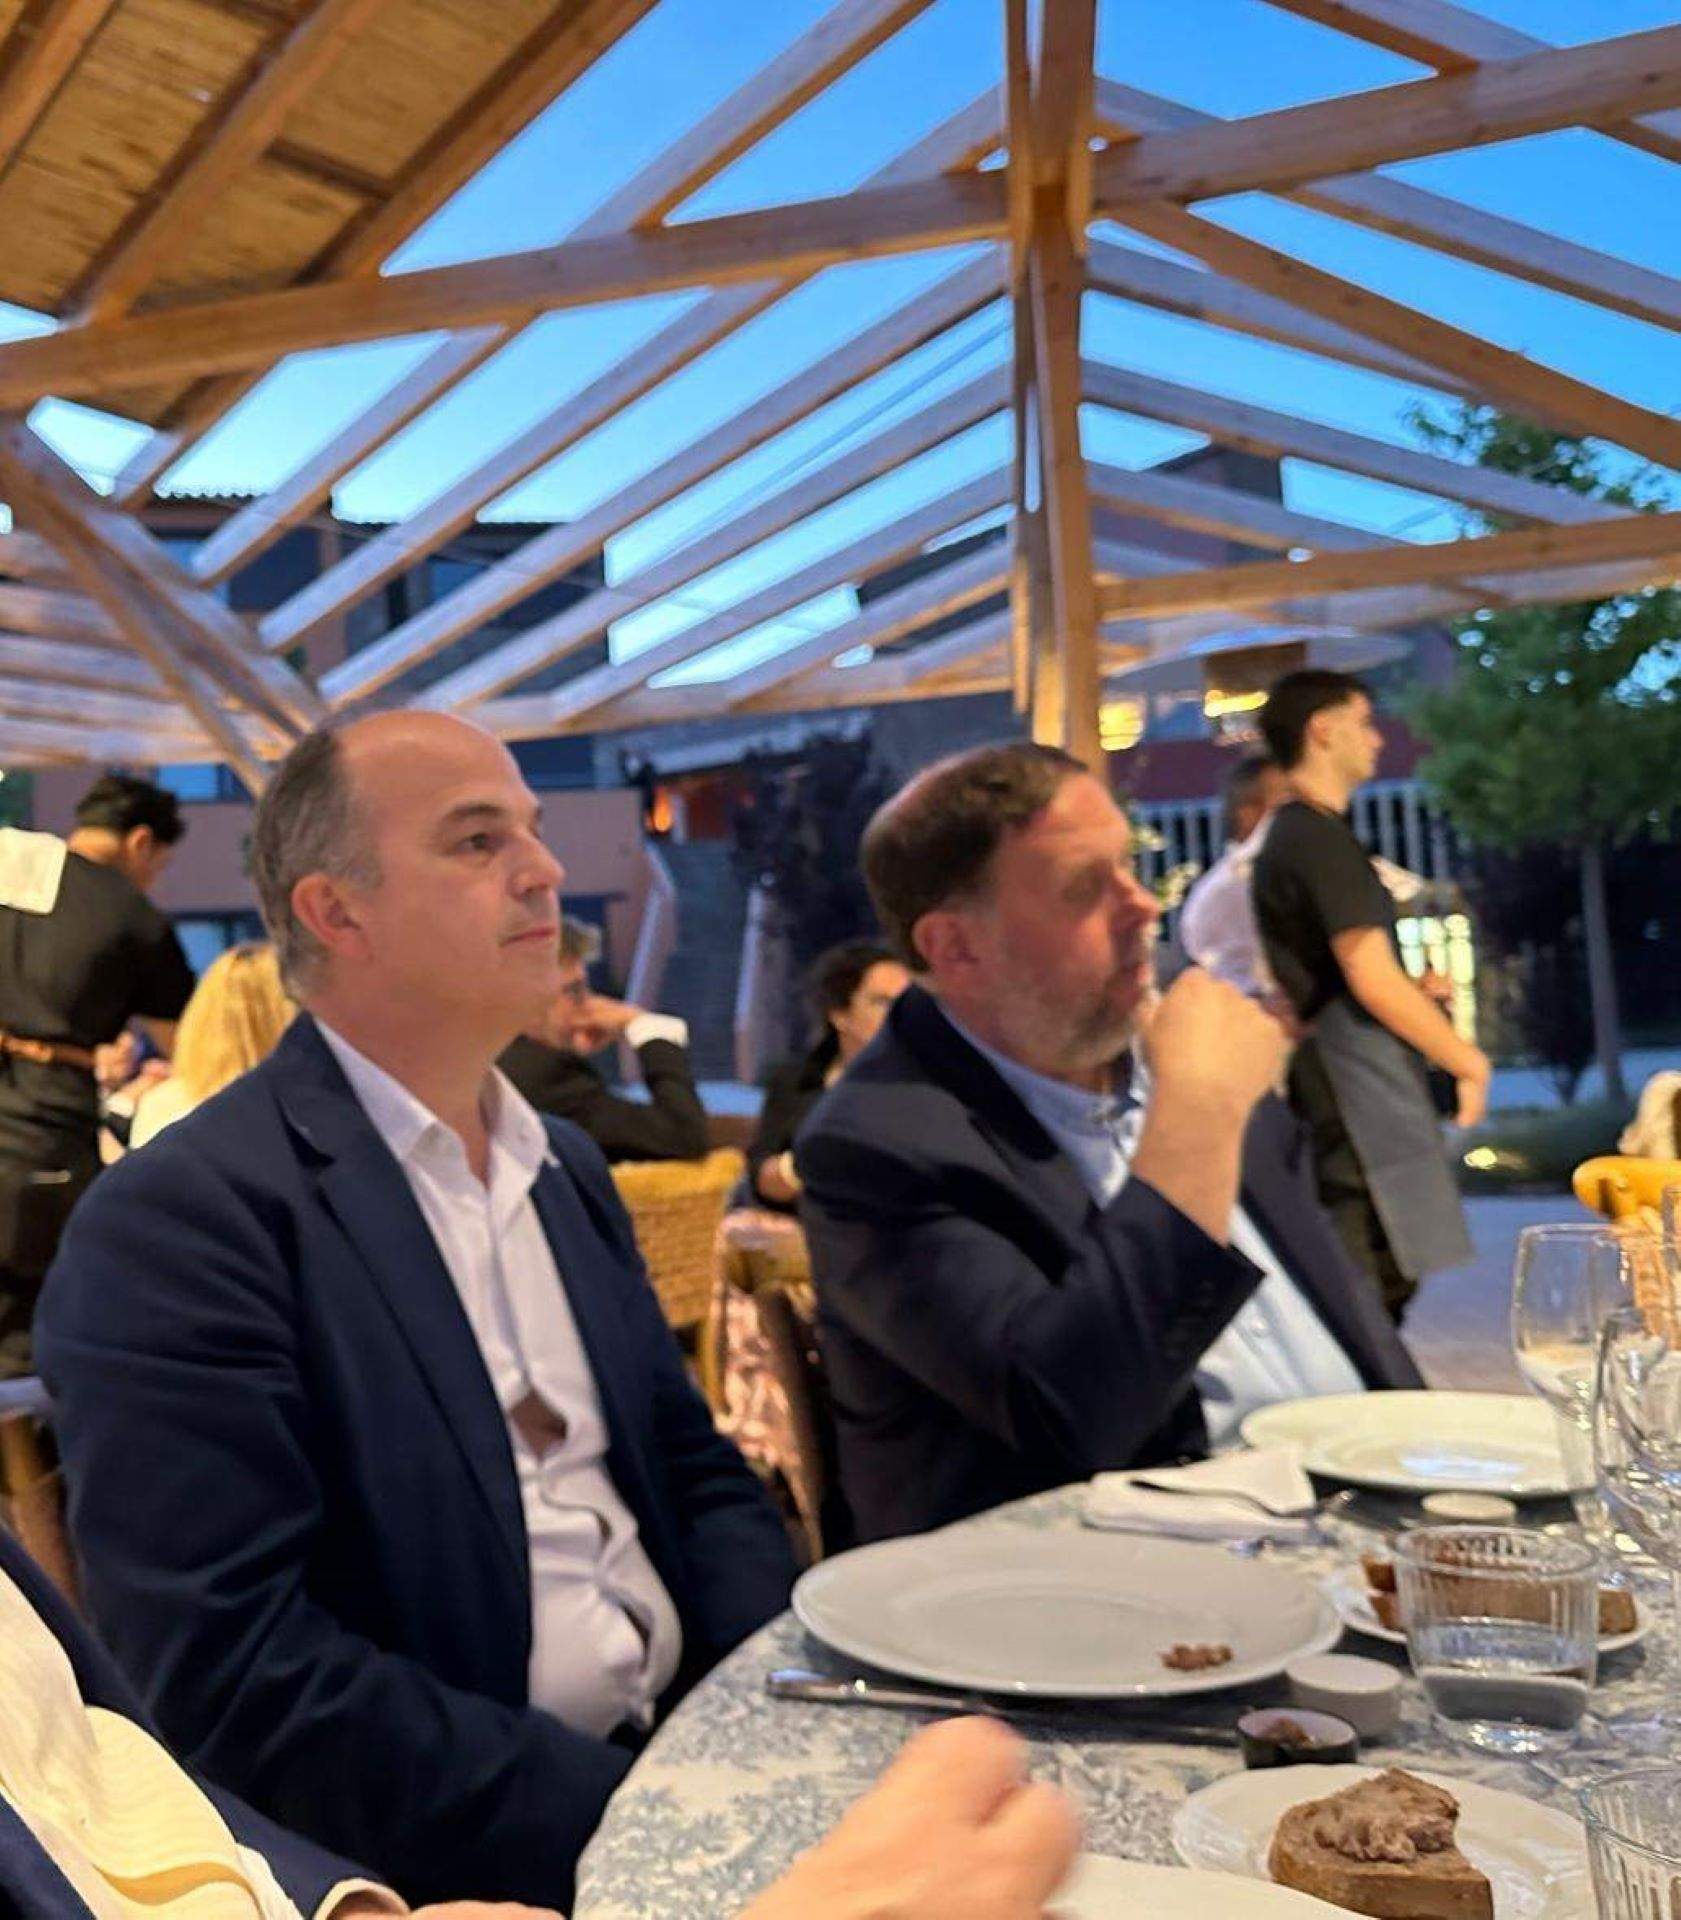 Una cena veraniega en Cardona reúne a Turull y a Junqueras en pleno debate sobre la investidura